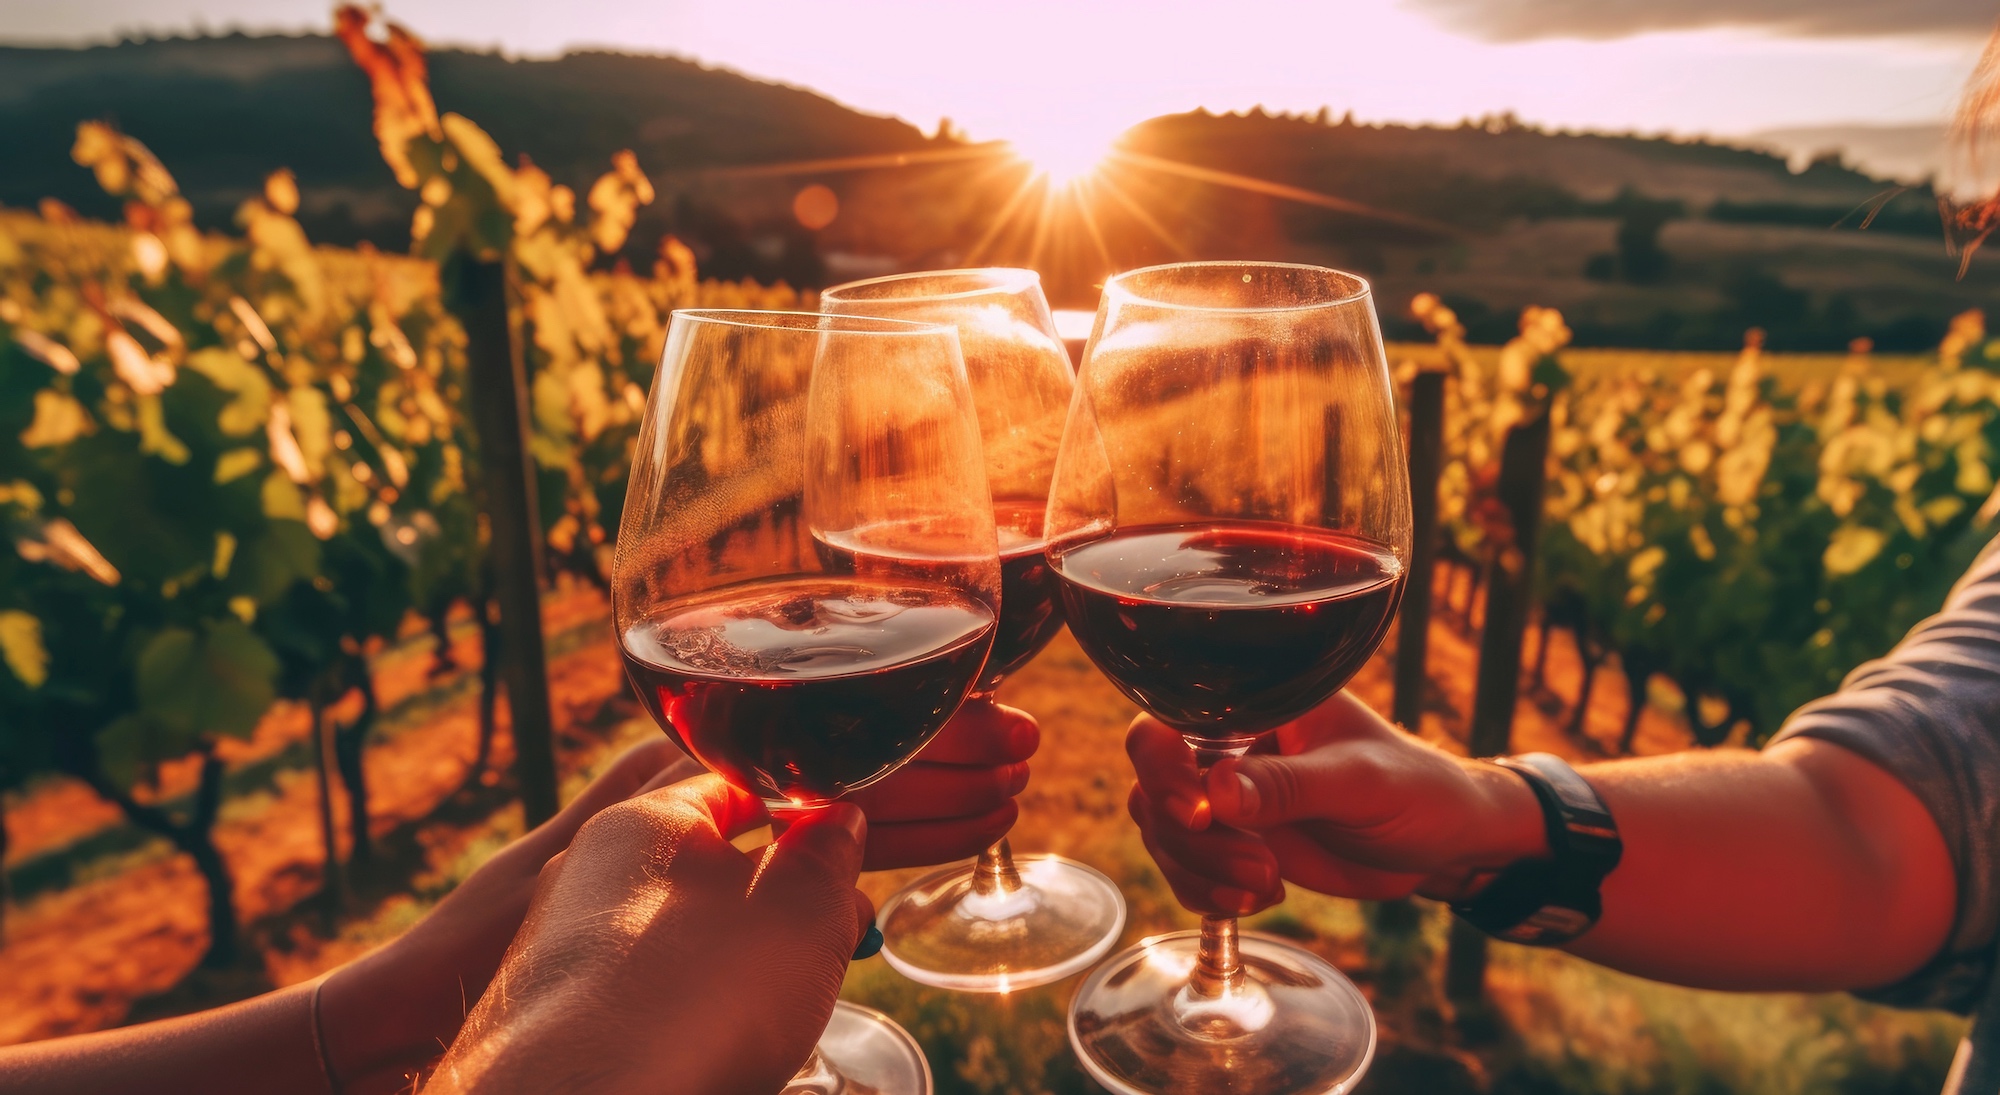 La qualité du vin s'est améliorée grâce aux conséquences du réchauffement climatique. © piai, Adobe Stock